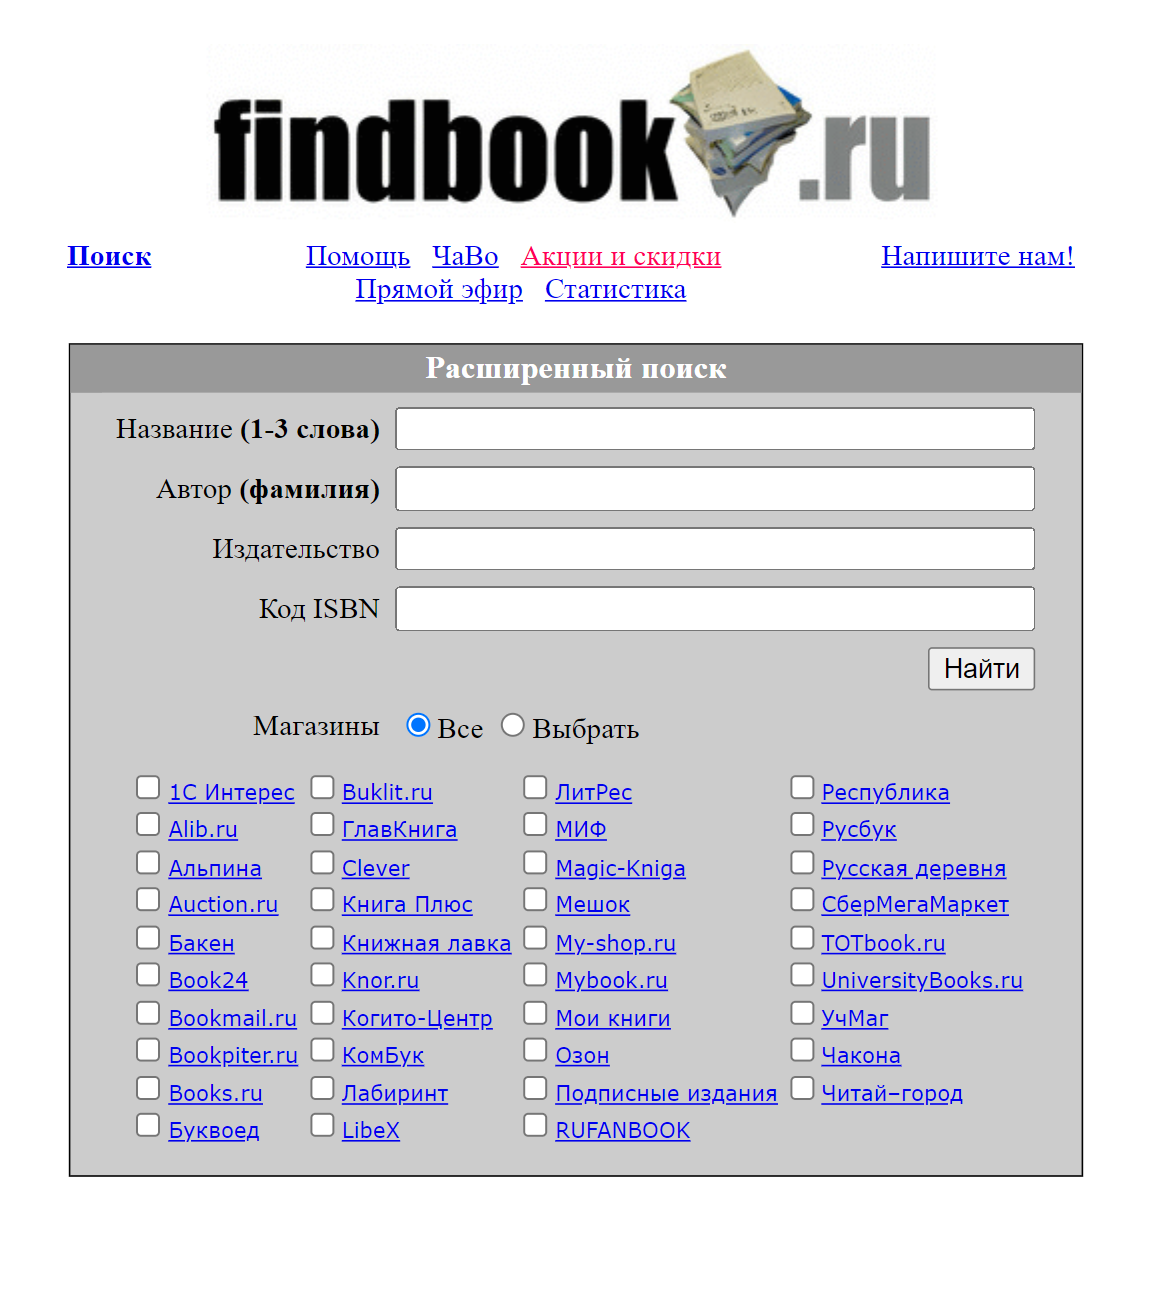 Findbook.ru ищет издания не только в книжных сетях, но и на маркетплейсах и среди электронных книг. Если вам не нужен такой широкий охват, можно отметить в фильтре только некоторые сайты